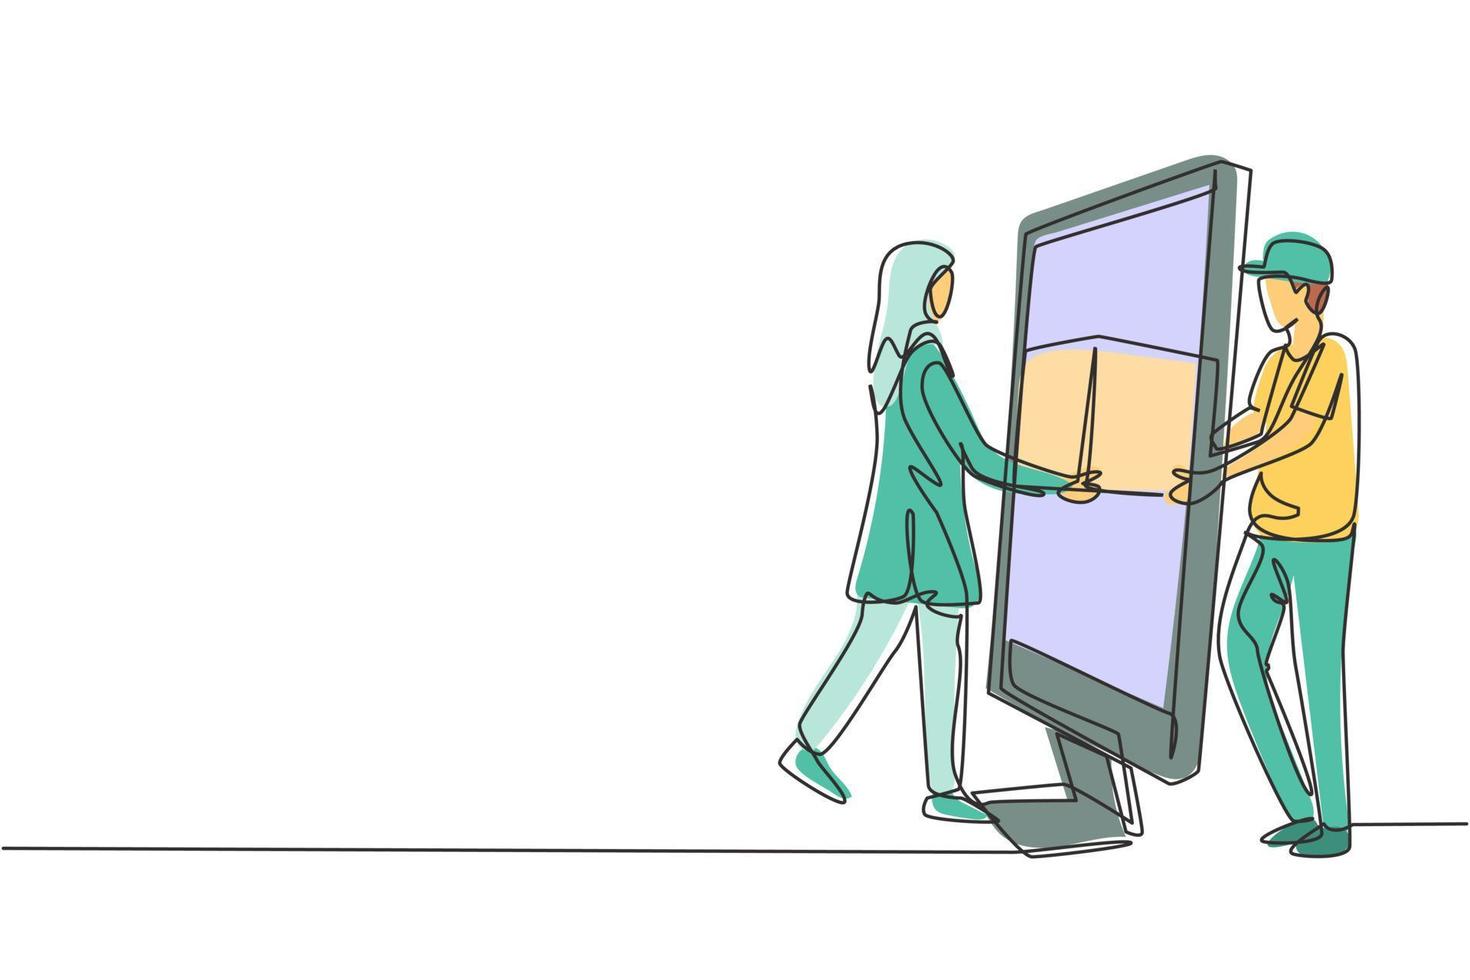 El mensajero masculino de dibujo de una sola línea entrega el paquete de la caja, a través de la pantalla del monitor, a la clienta hijab. servicio de entrega online. Ilustración de vector gráfico de diseño de dibujo de línea continua moderna